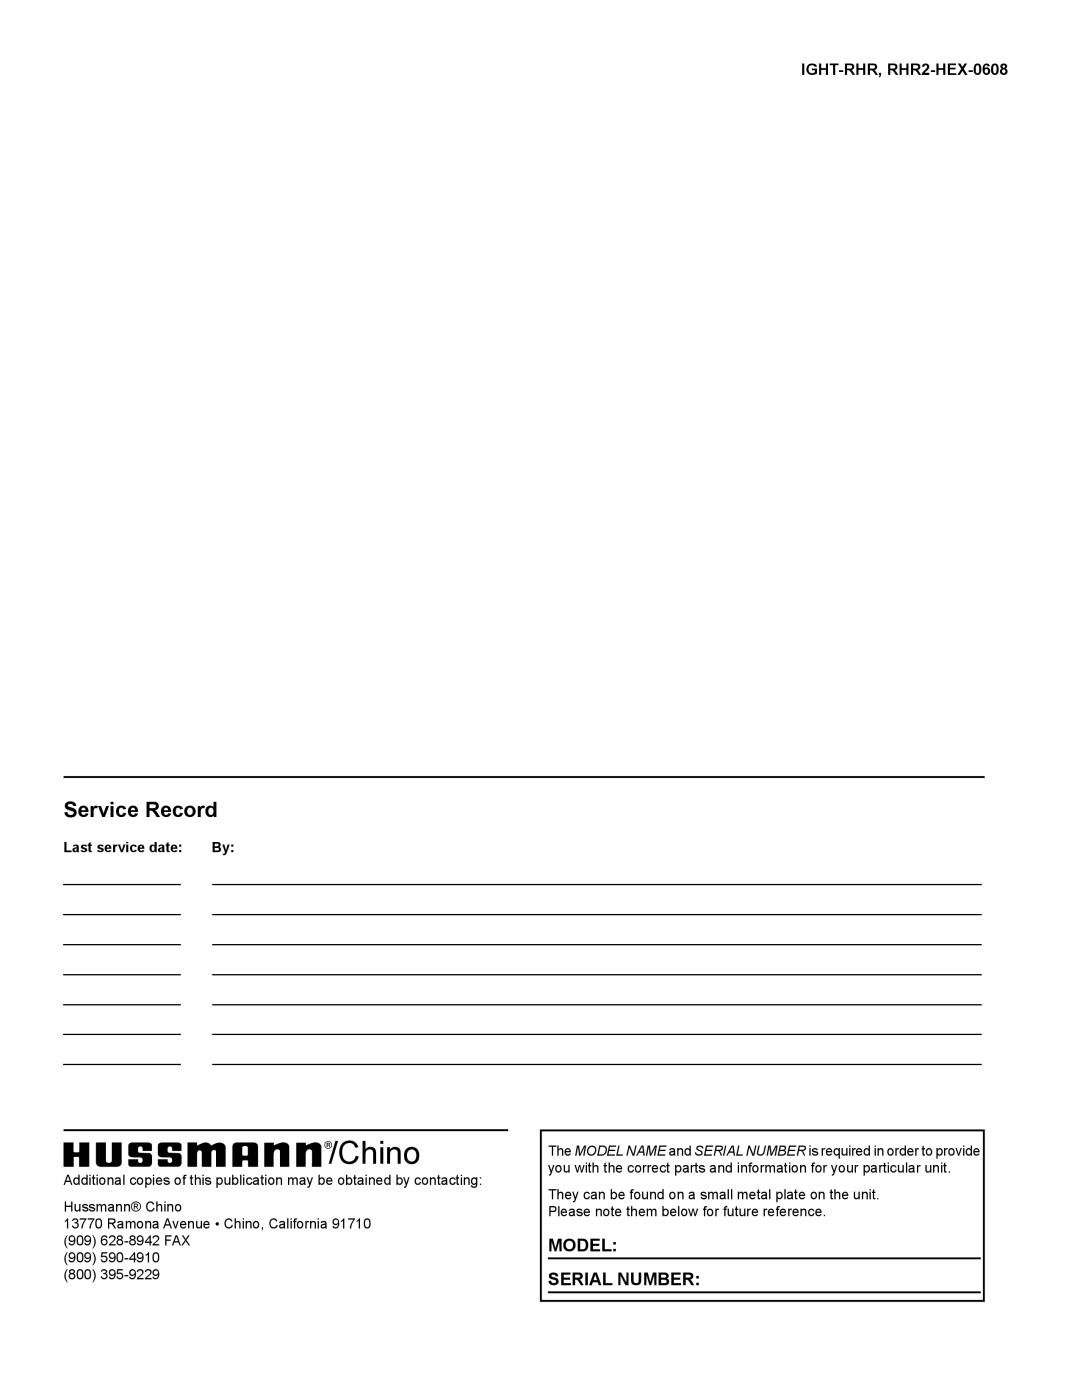 hussman RHR 1/2 HEX, rhr-hex, RHR-SQ Chino, Service Record, Model Serial Number, IGHT-RHR, RHR2-HEX-0608, Last service date 